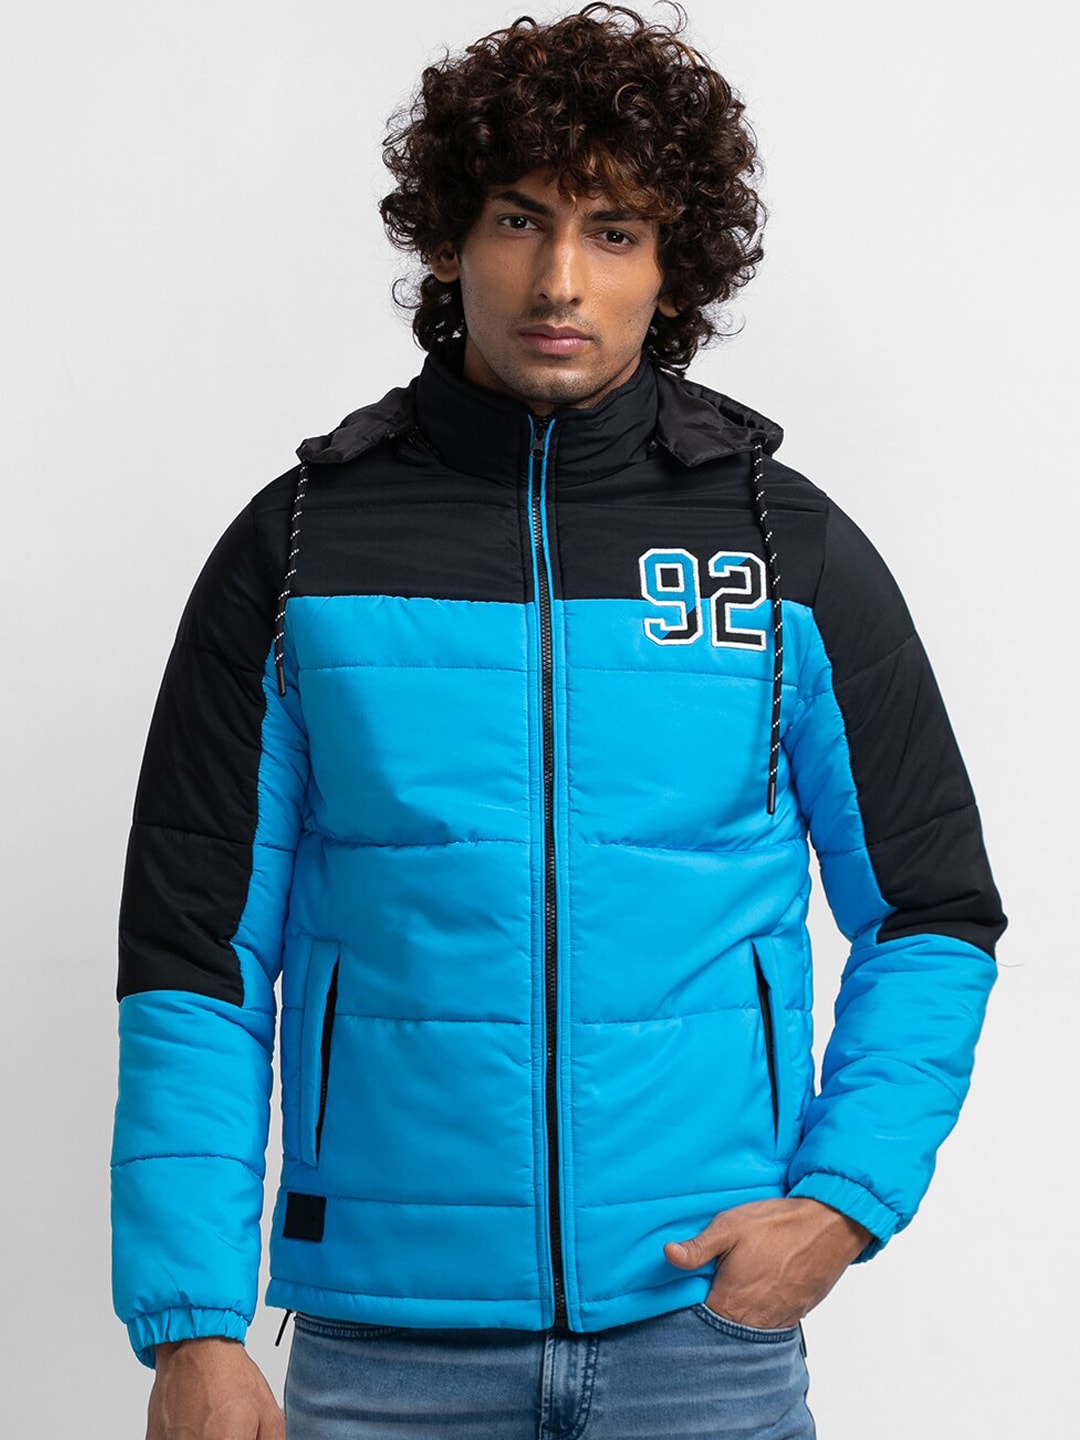 Buy Spykar Blue Full Sleeves Mock Collar Jacket for Men's Online @ Tata CLiQ